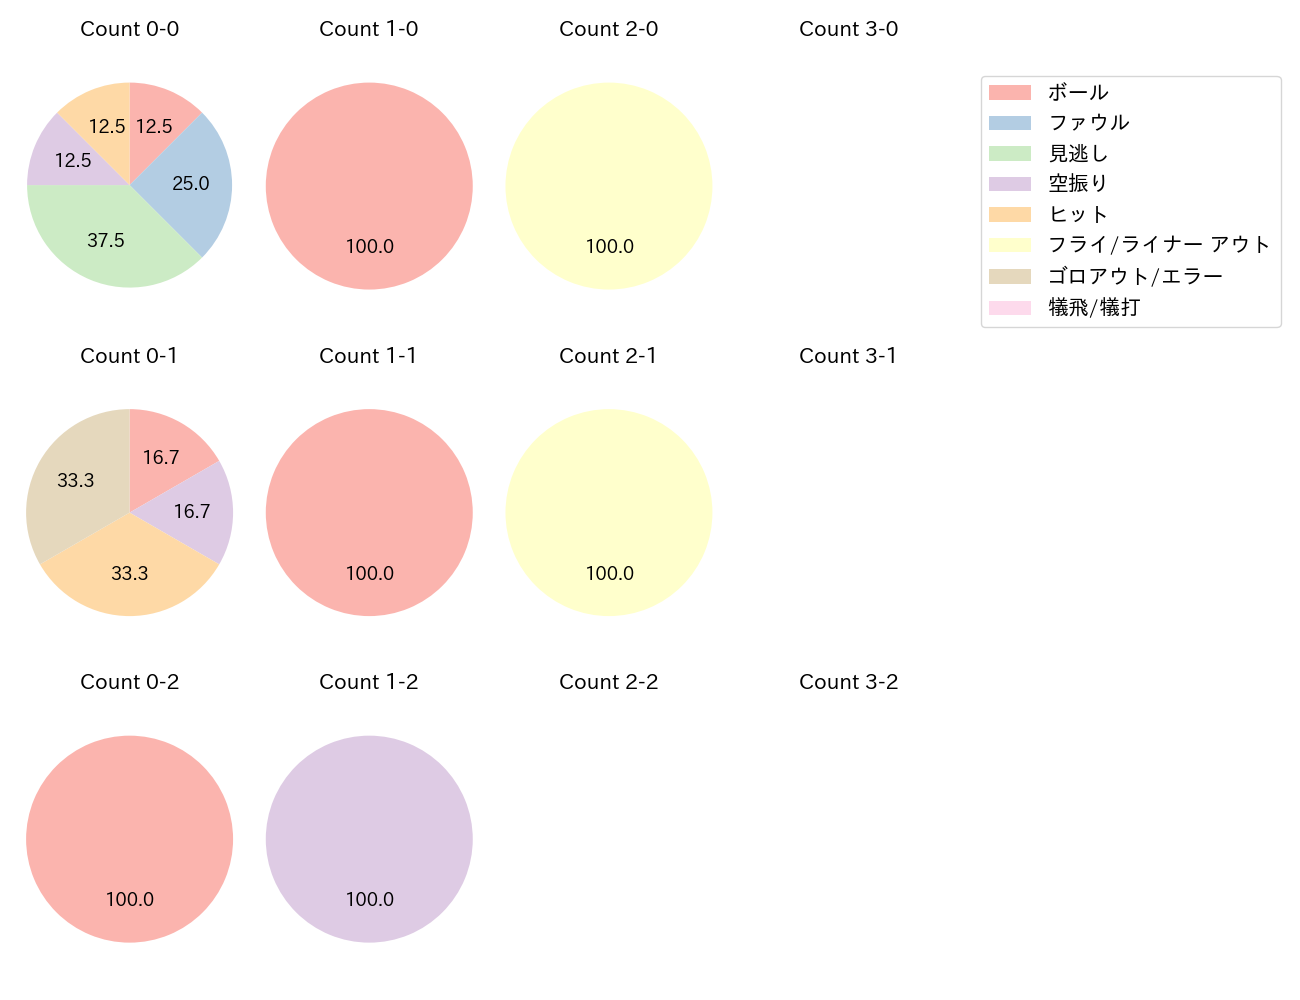 長岡 秀樹の球数分布(2023年10月)